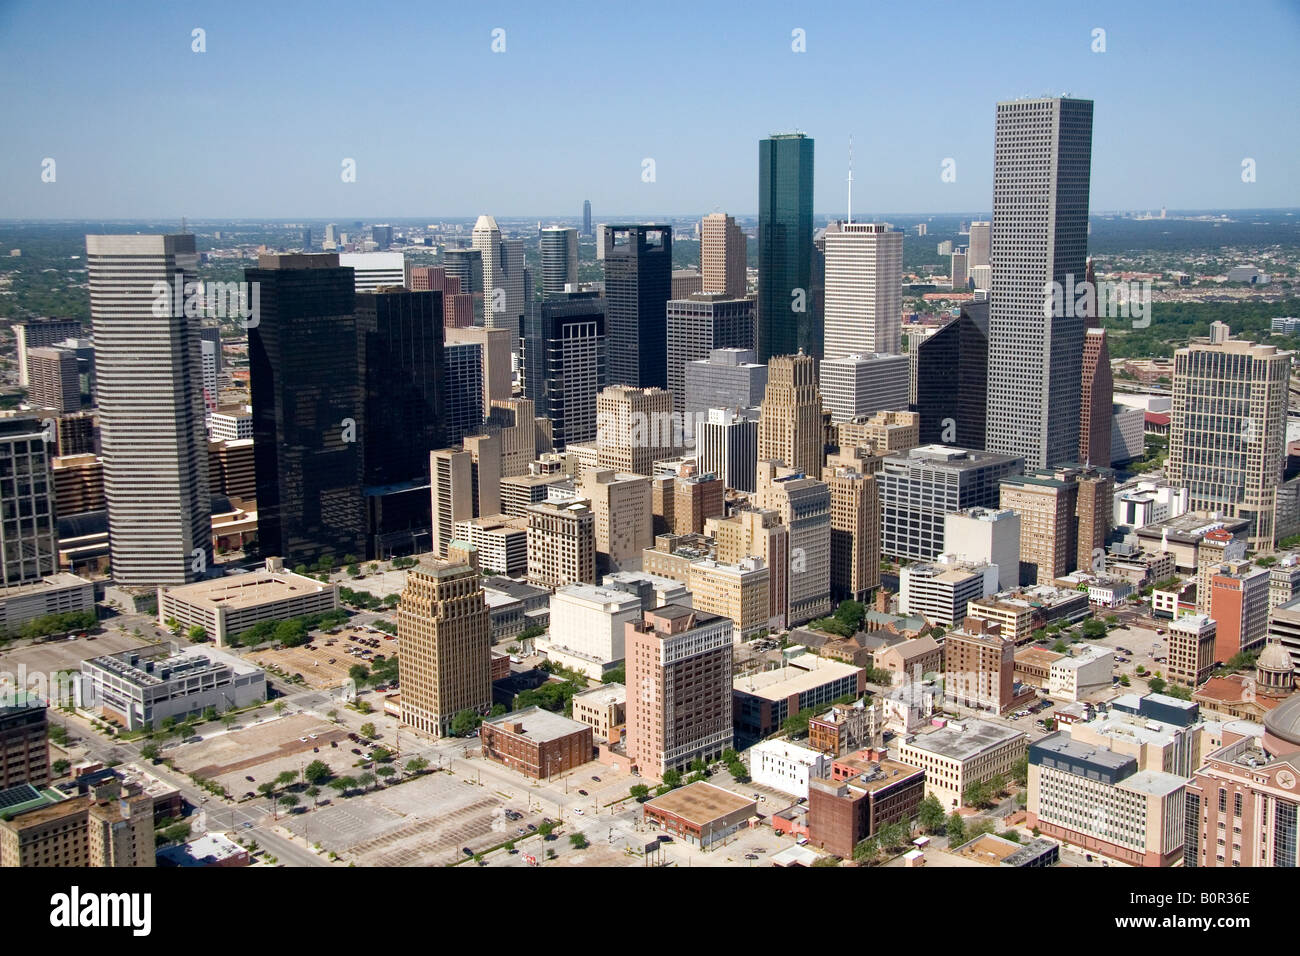 Aerial view of downtown Houston Texas Stock Photo